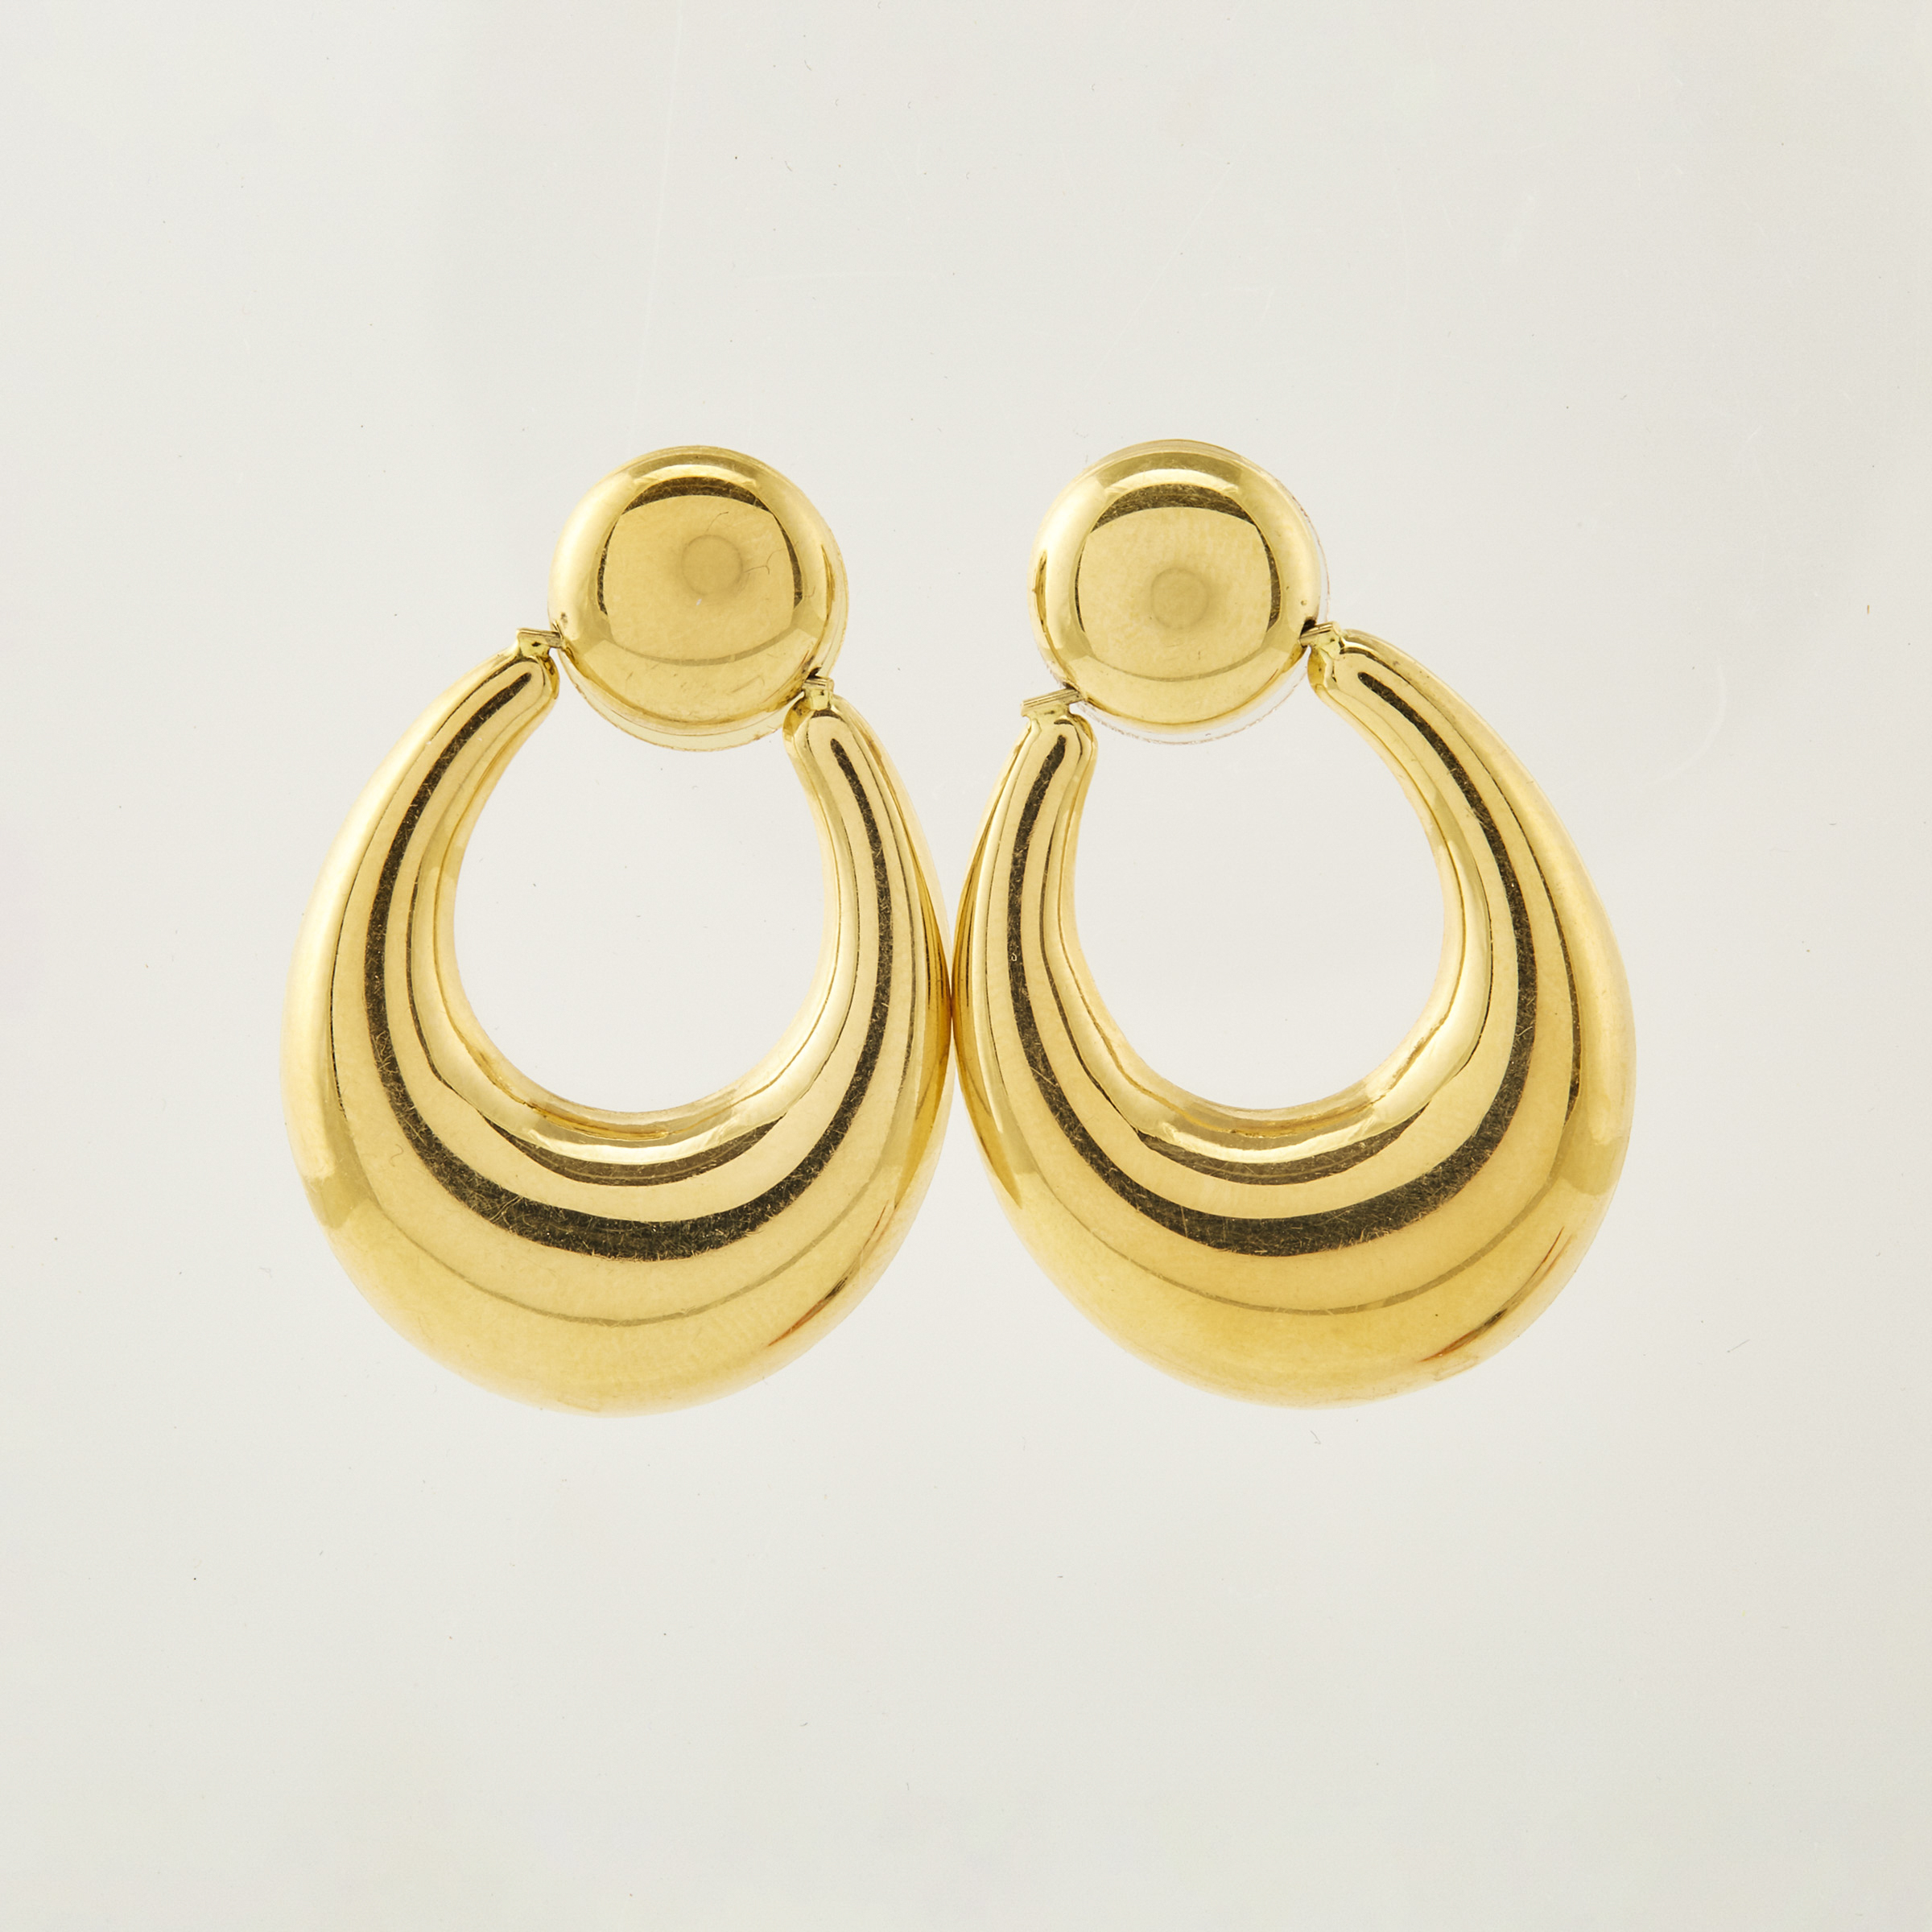 Pair of Le Gi 18k Yellow Gold Hoop Earrings